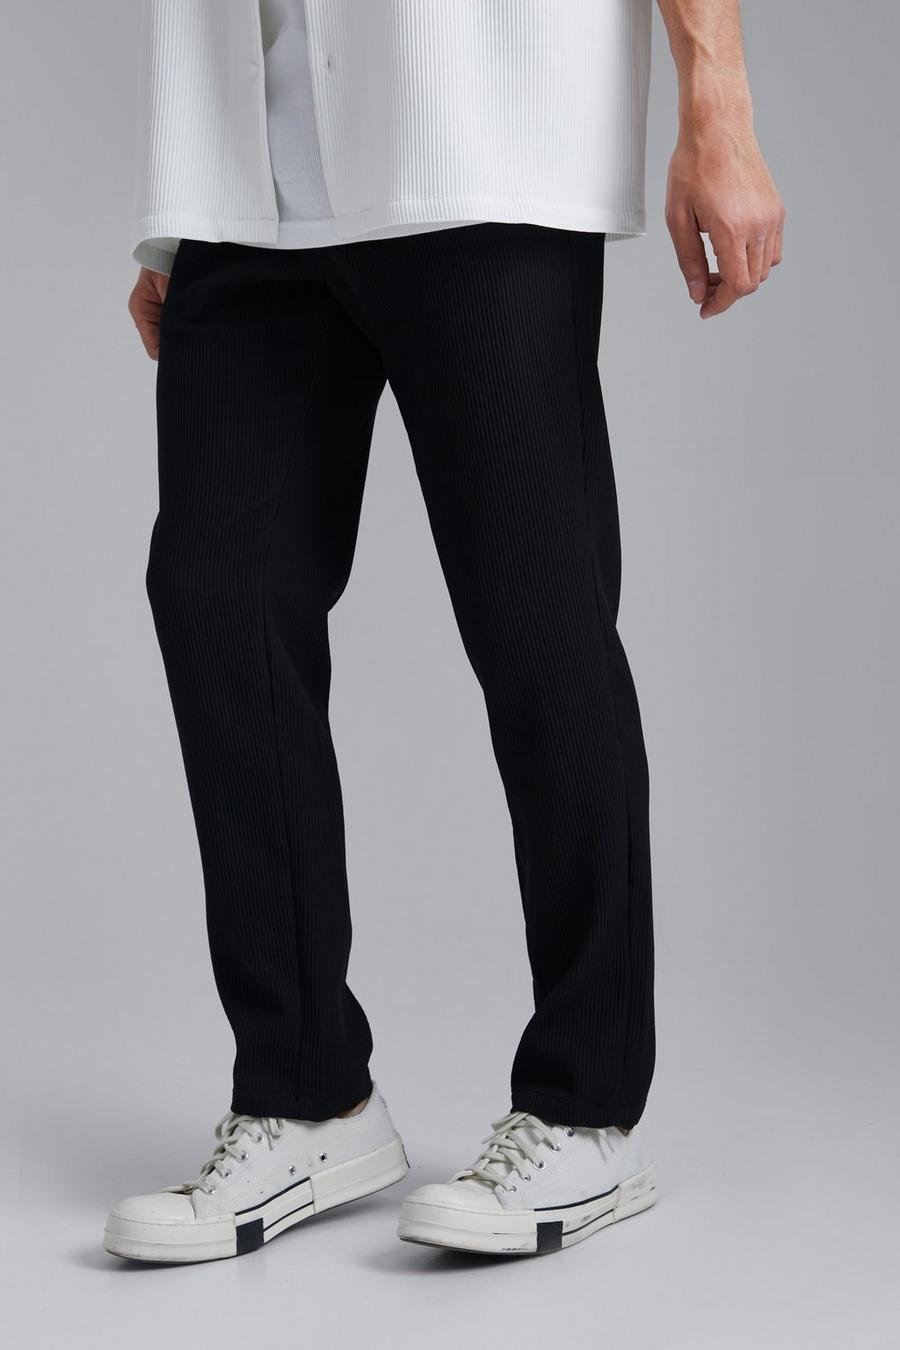 Pantalon court plissé, Black noir